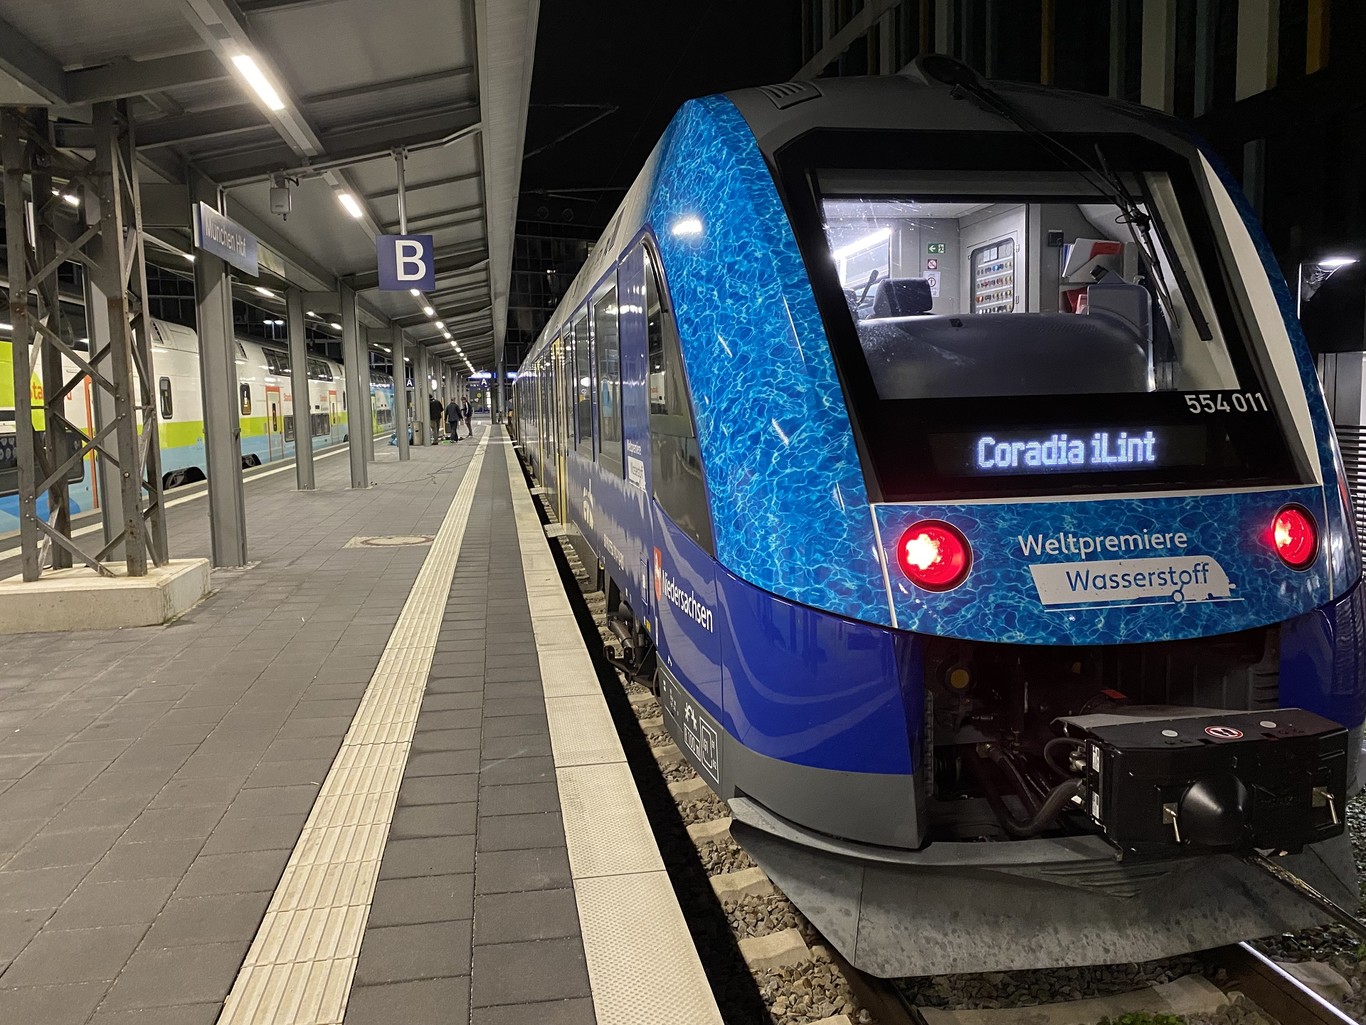 En un seul plein d'hydrogène, le nouveau train d'Alstom pourrait rallier Marseille à Saint-Malo